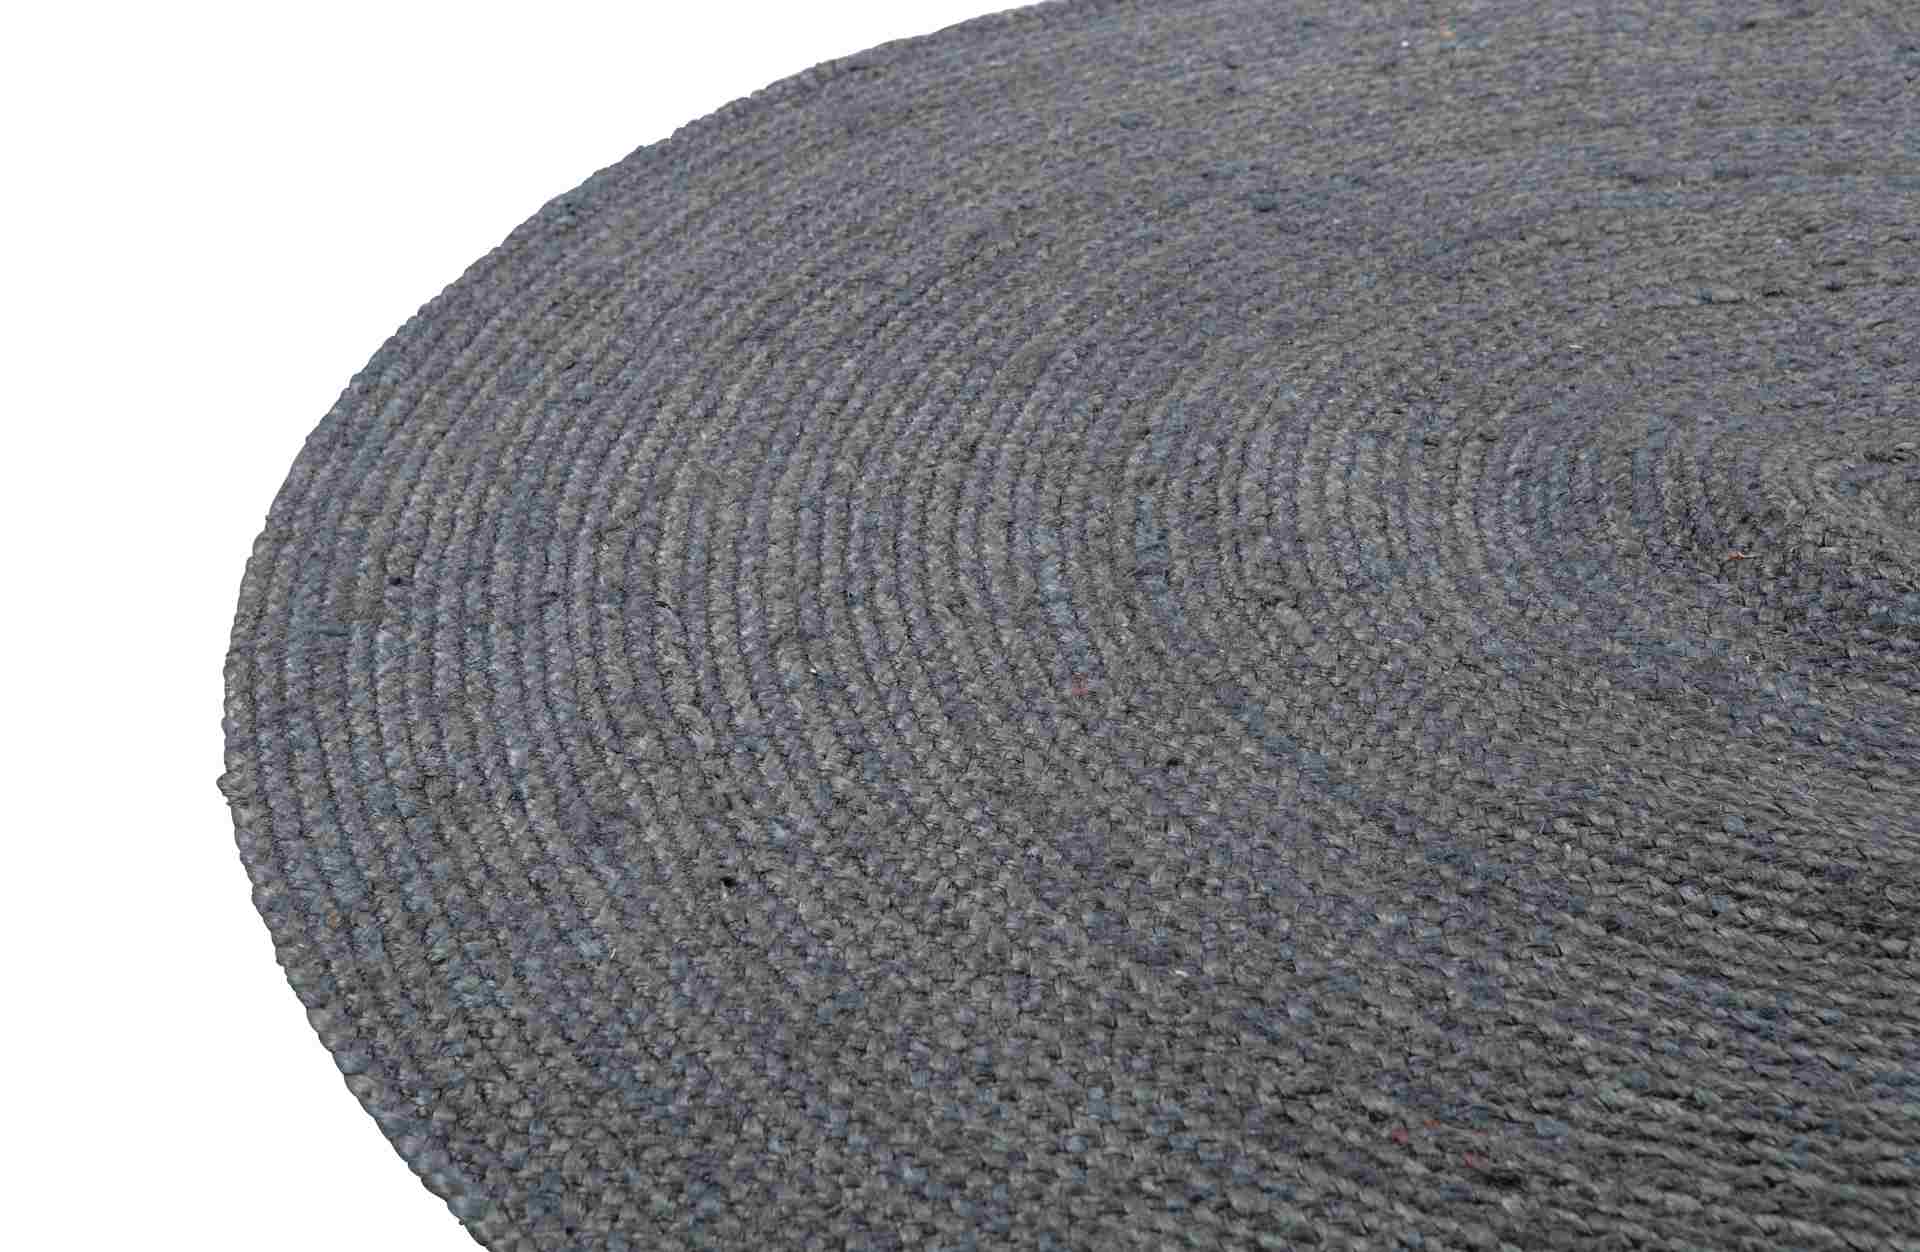 Der Teppich Ross überzeugt mit seinem klassischen Design. Gefertigt wurde er aus Jute, welche einen grauen Farbton besitzen. Der Teppich besitzt einen Durchmesser von 150 cm.